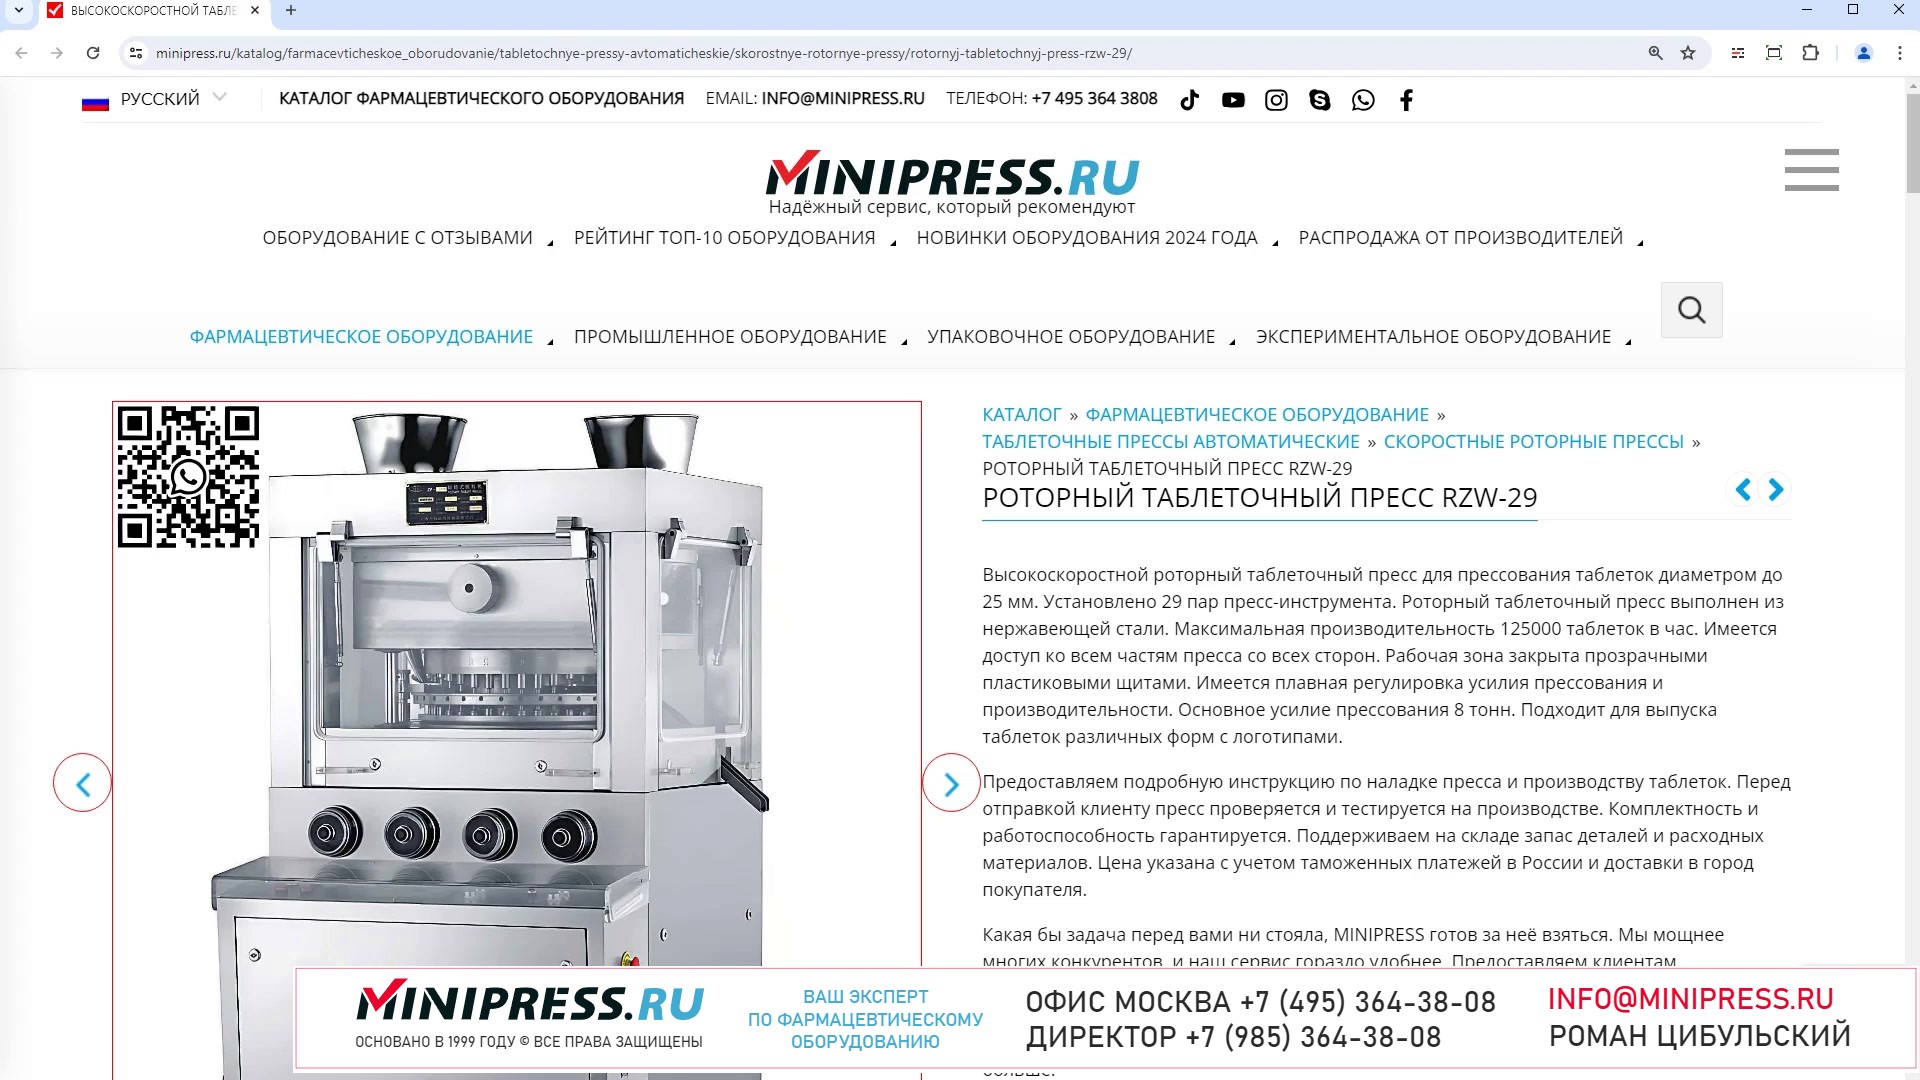 Minipress.ru Роторный таблеточный пресс RZW-29